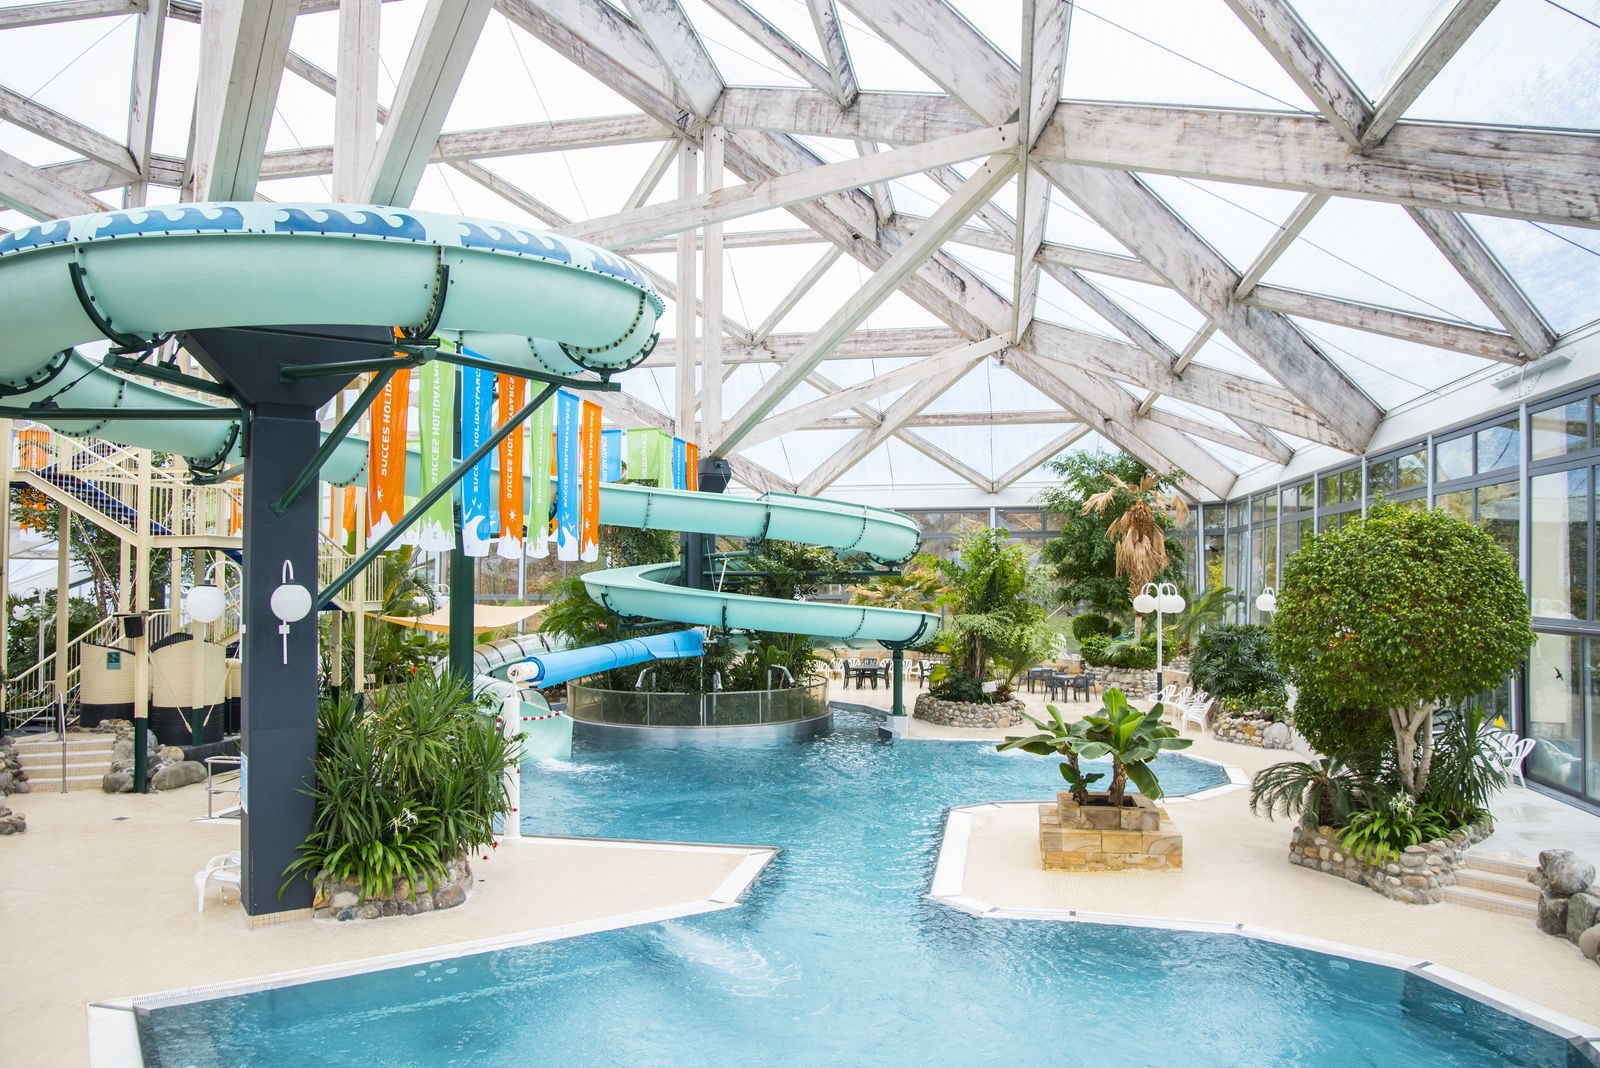 Ferienpark in Deutschland mit Schwimmbad